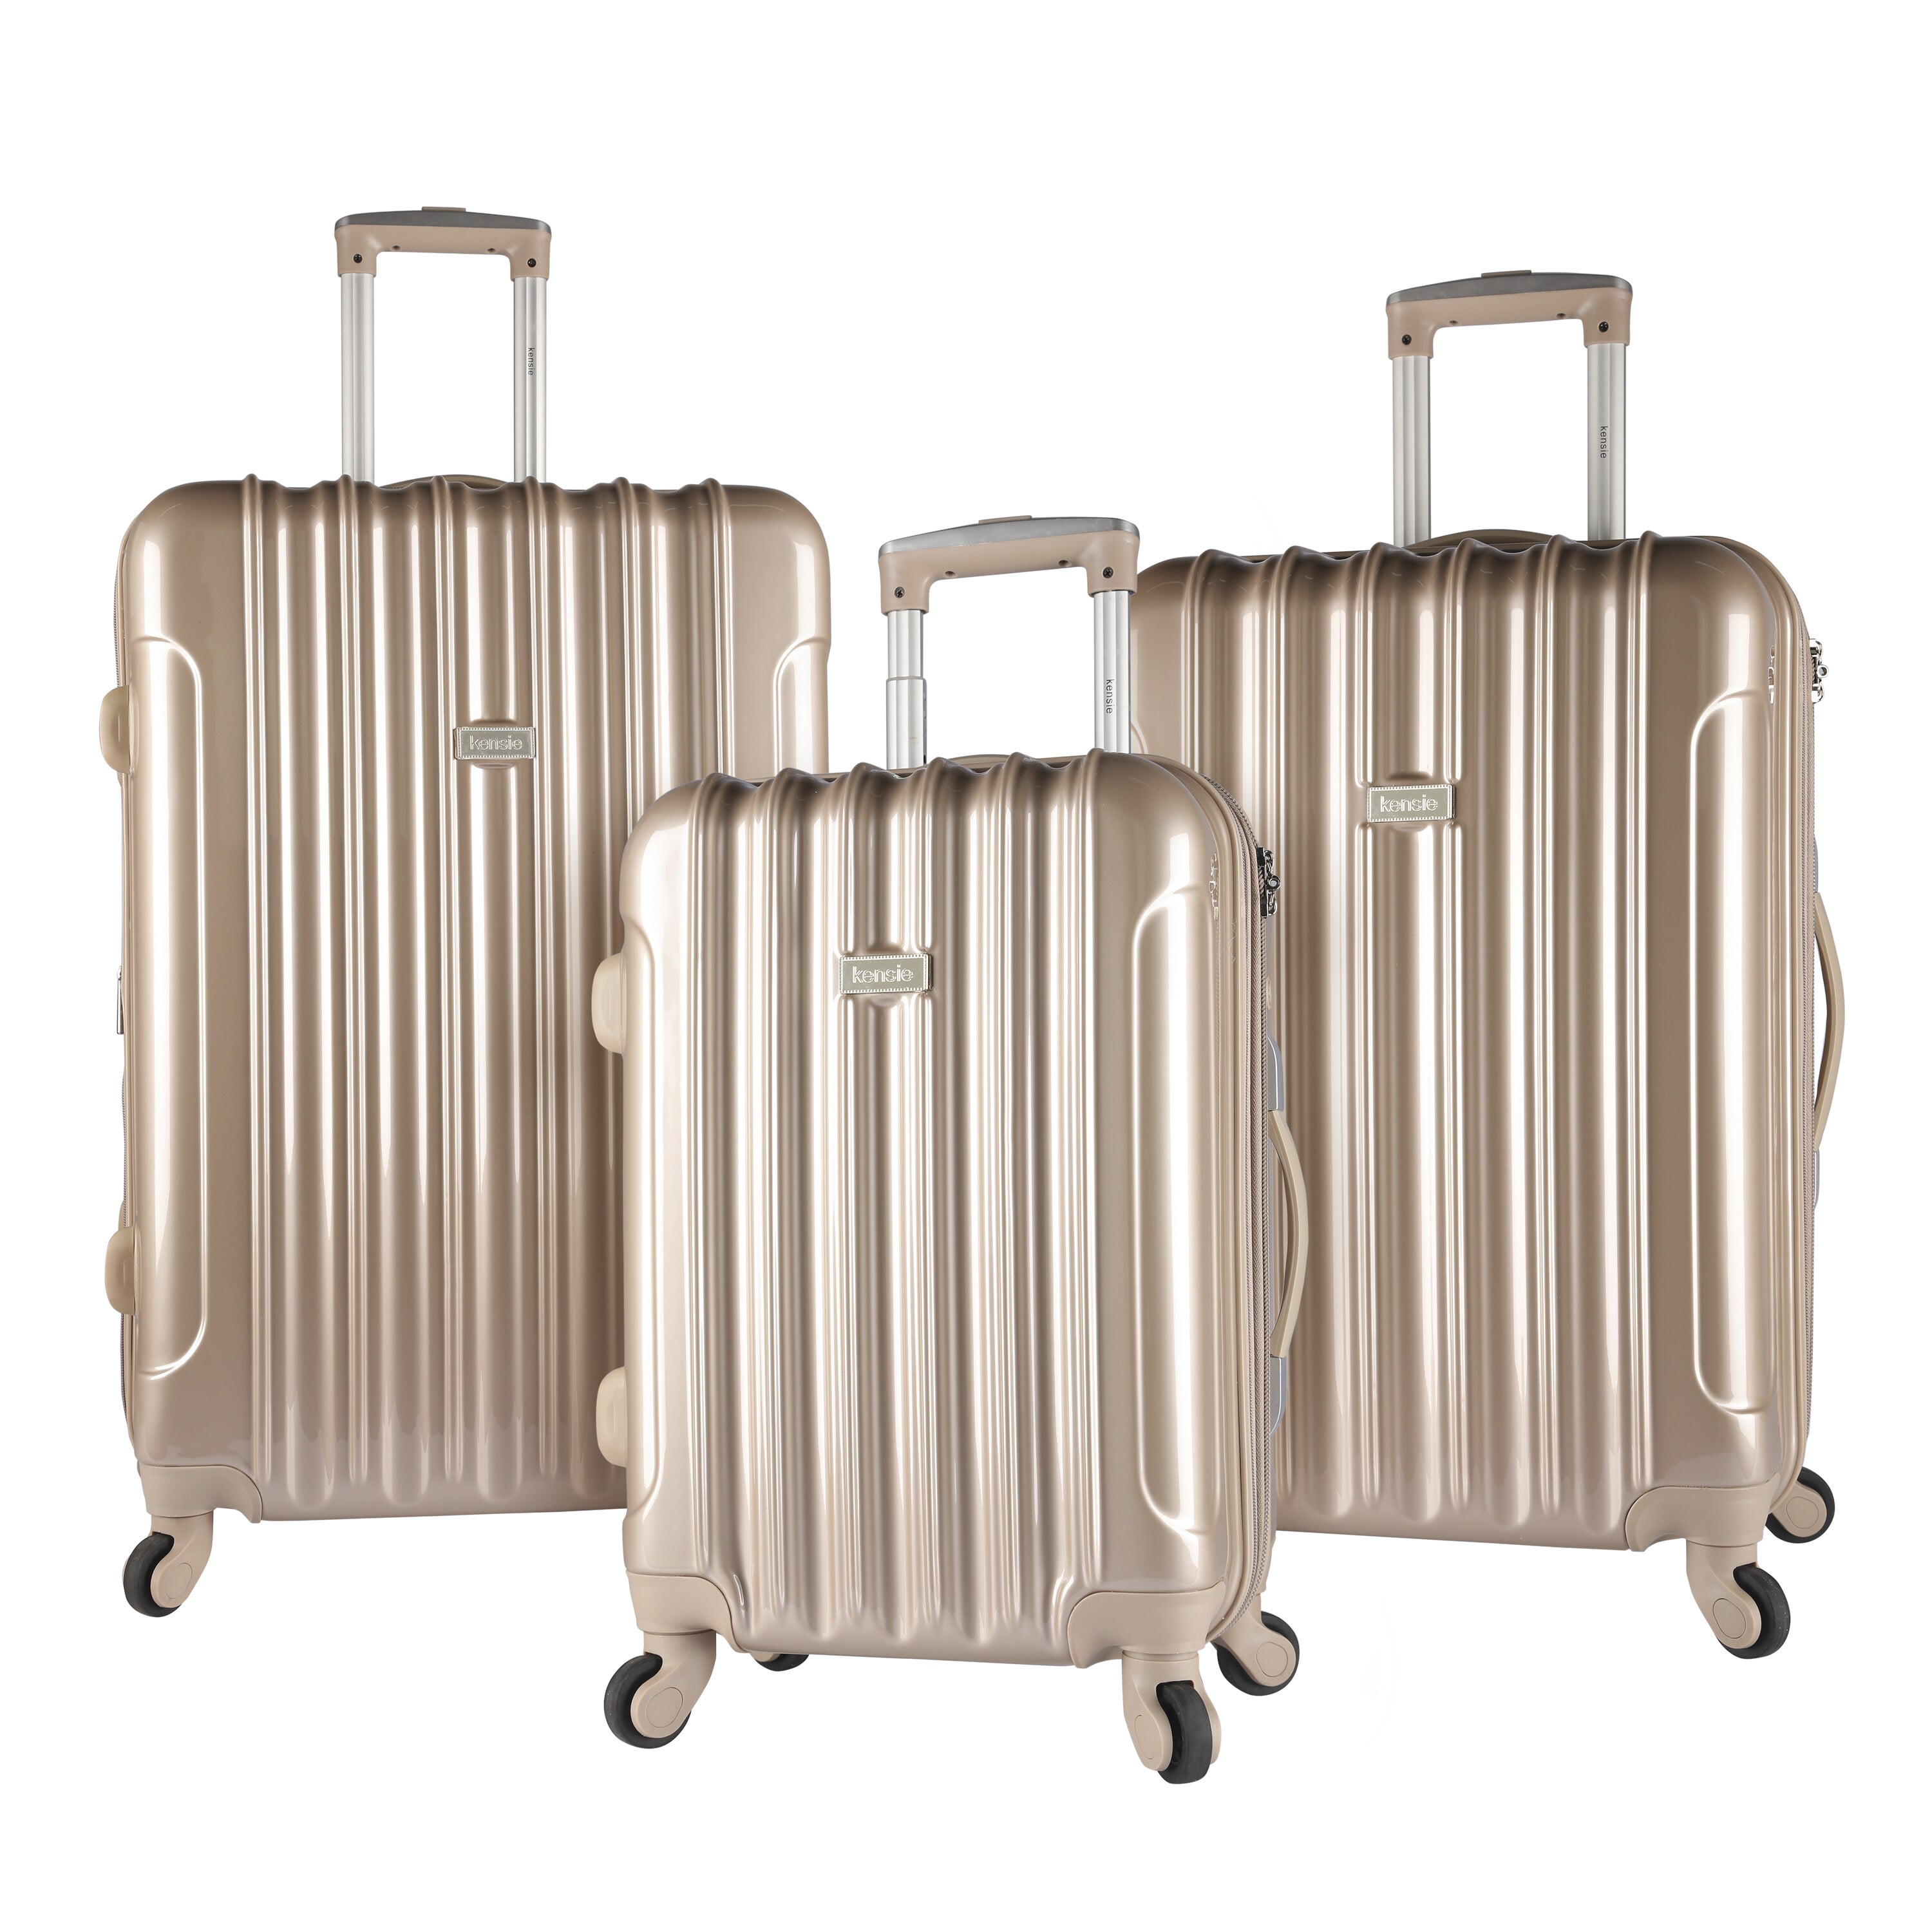 4 wheel travel luggage set